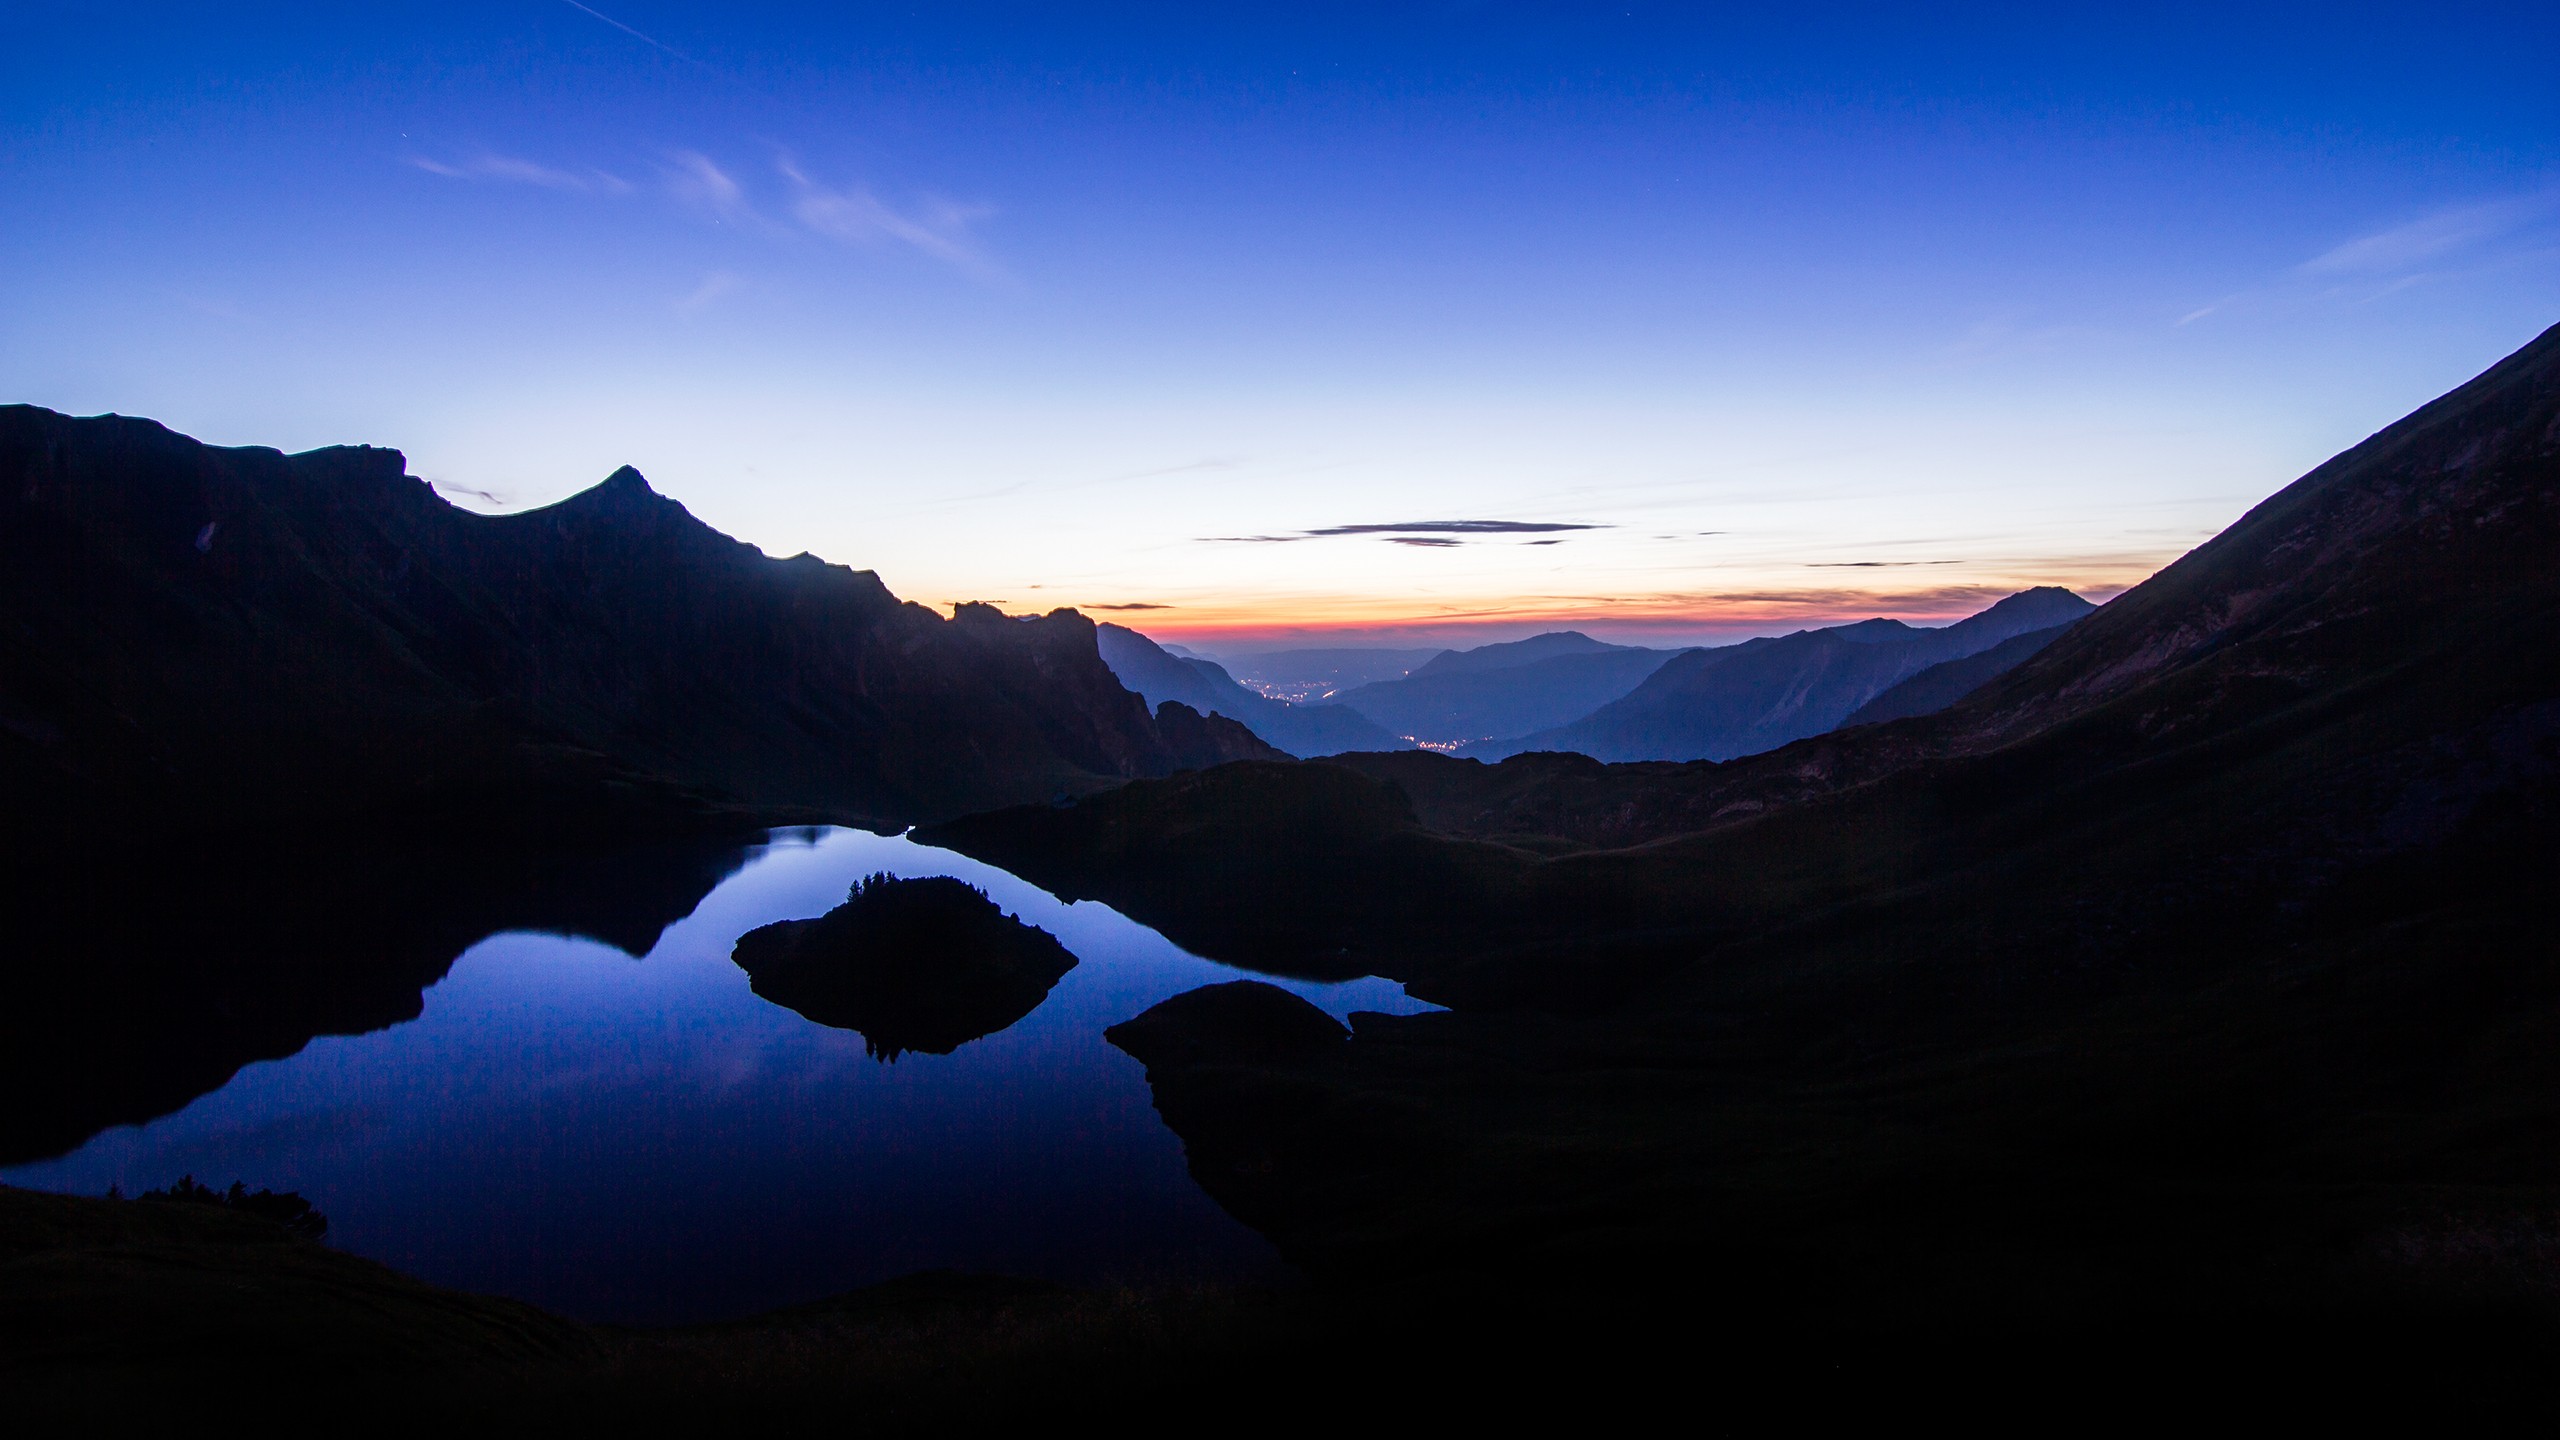 黎明时分的山间湖泊